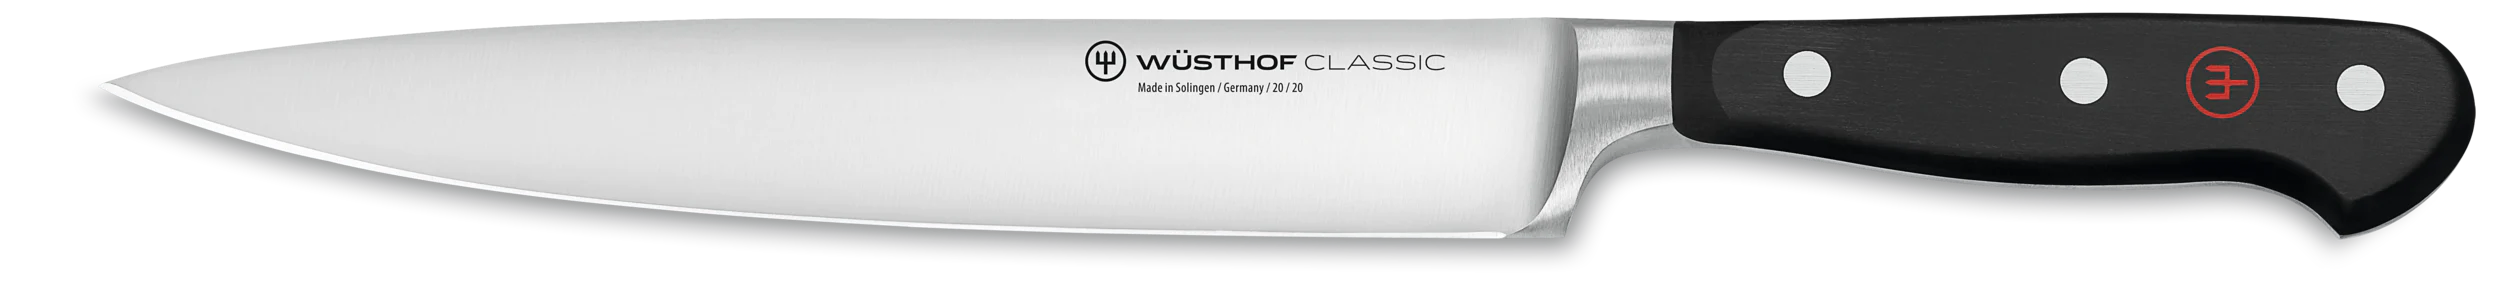 WÜSTHOF Classic Schinkenmesser 20cm